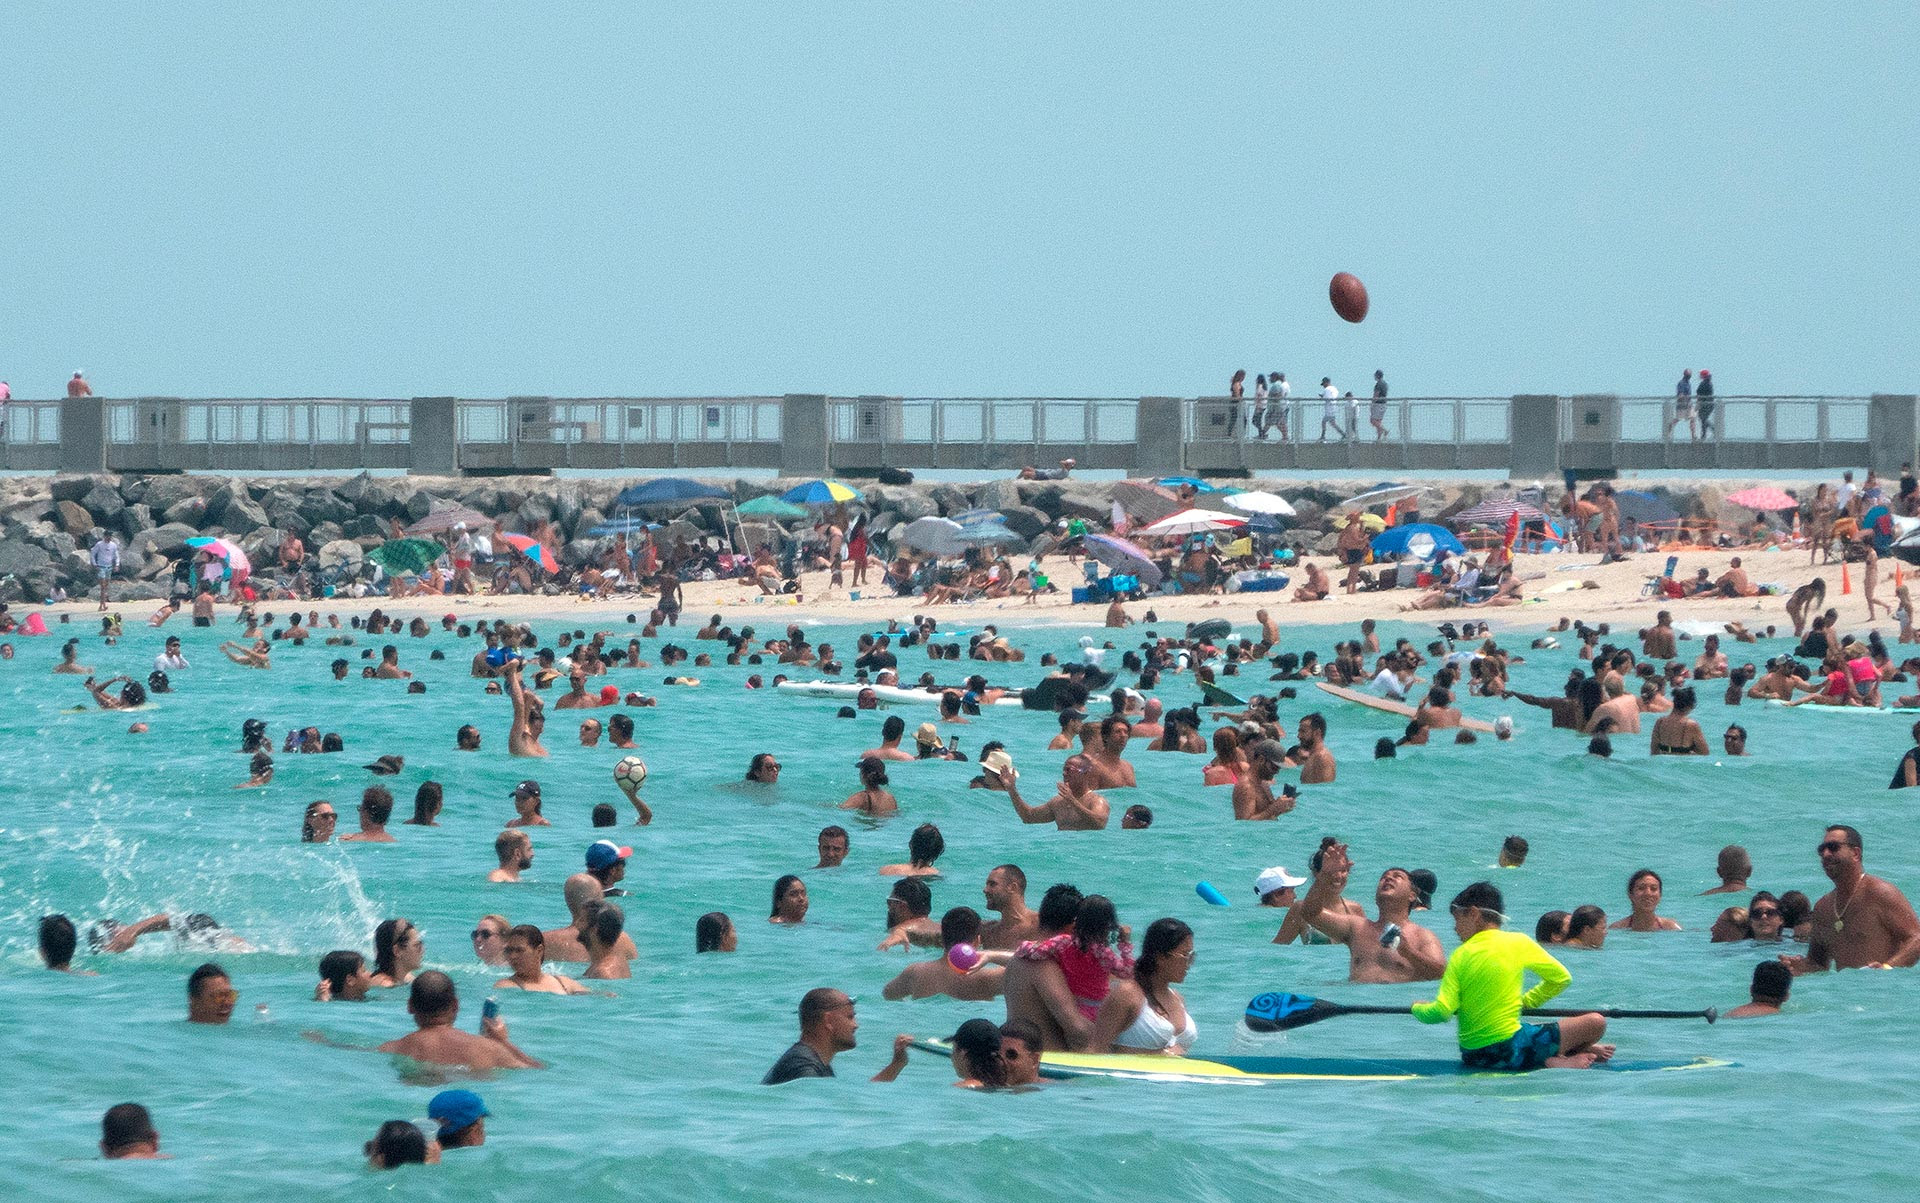 Pese al récord de contagios de coronavirus y la falta de camas, las playas de Miami siguen llenas